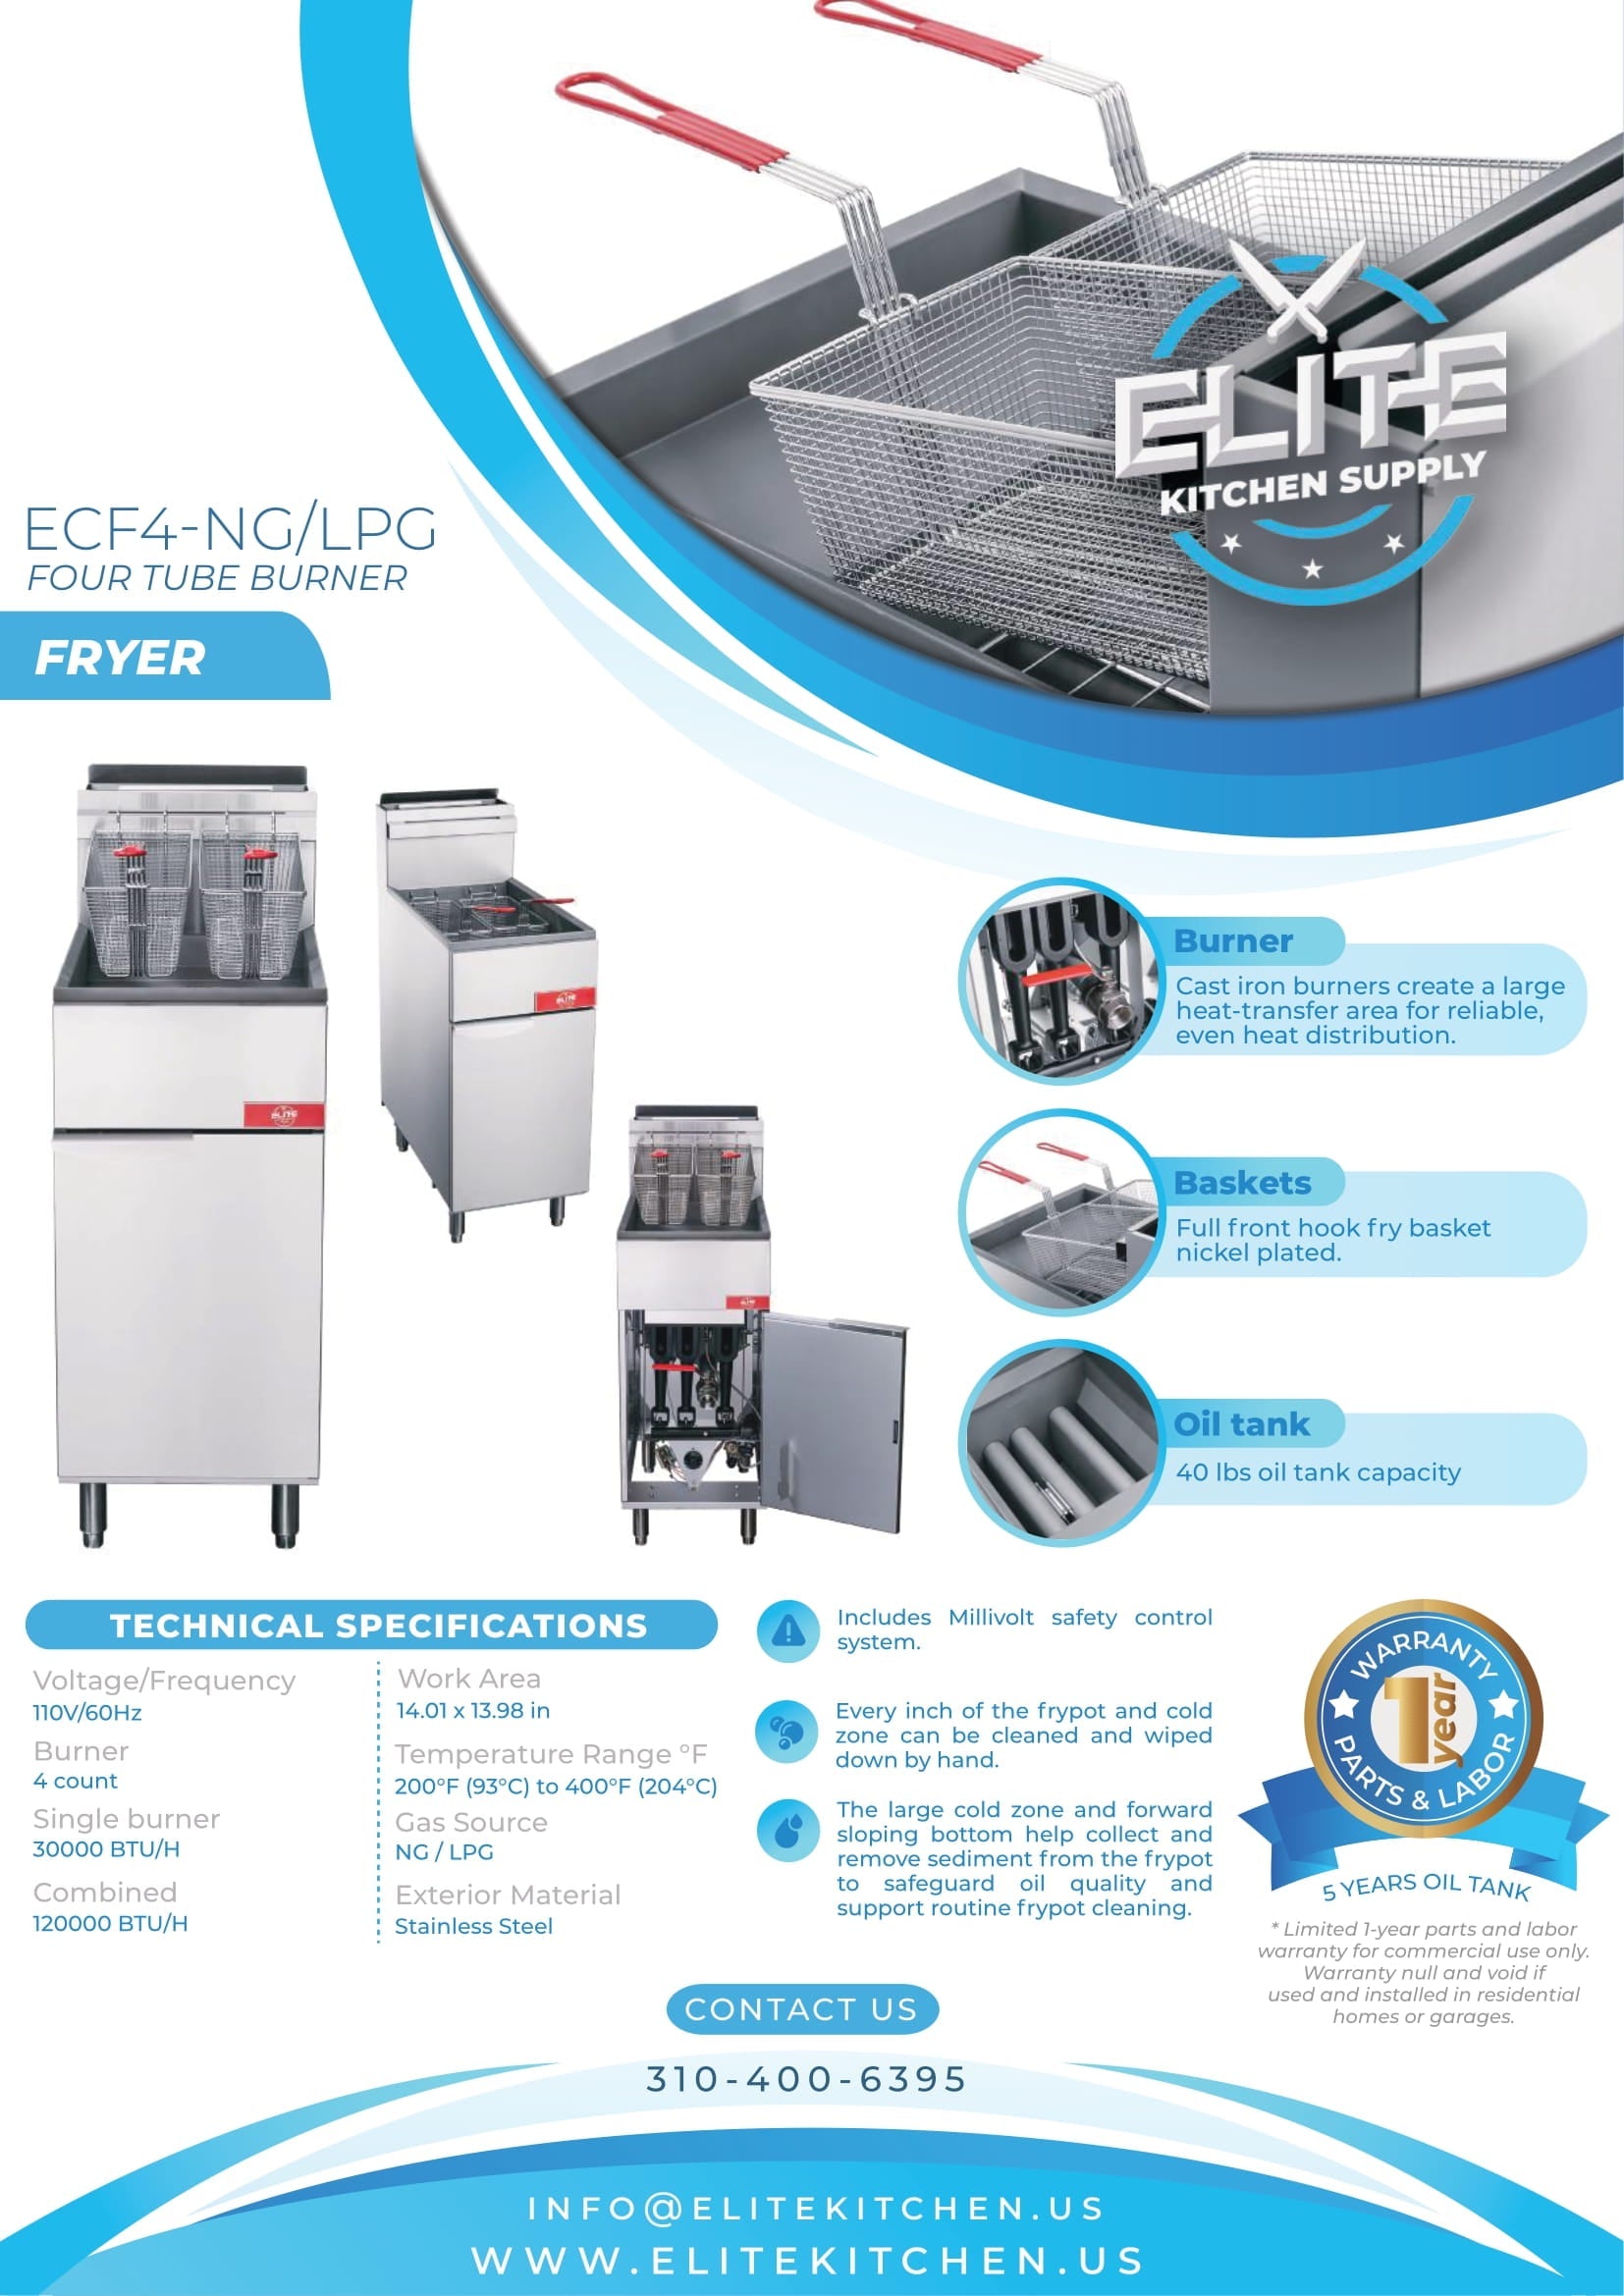 ECF4-NG 4 Tube Burner Fryer